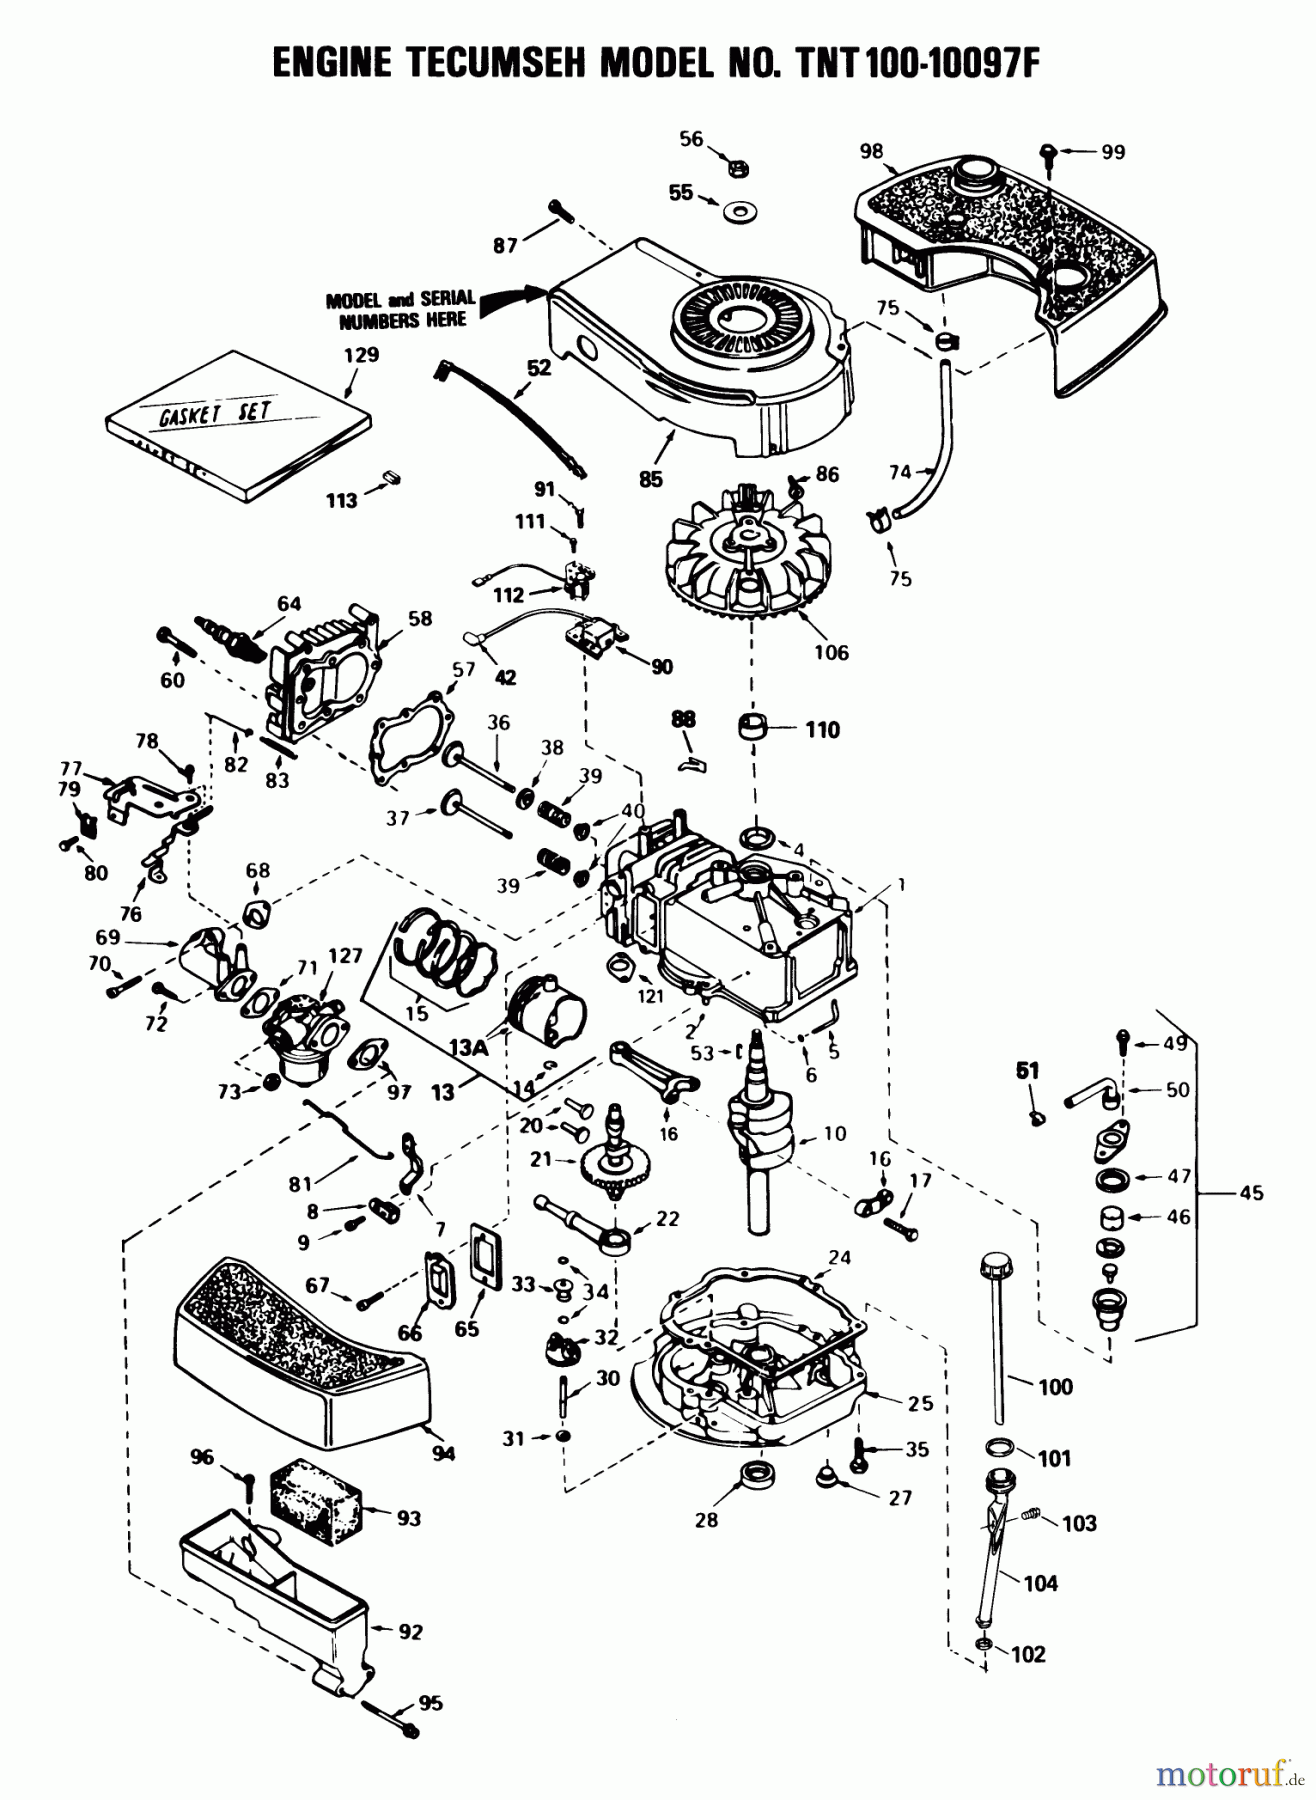  Toro Neu Mowers, Walk-Behind Seite 1 16793 - Toro Lawnmower, 1988 (8000001-8999999) ENGINE TECUMSEH MODEL NO. TNT 100-10097F